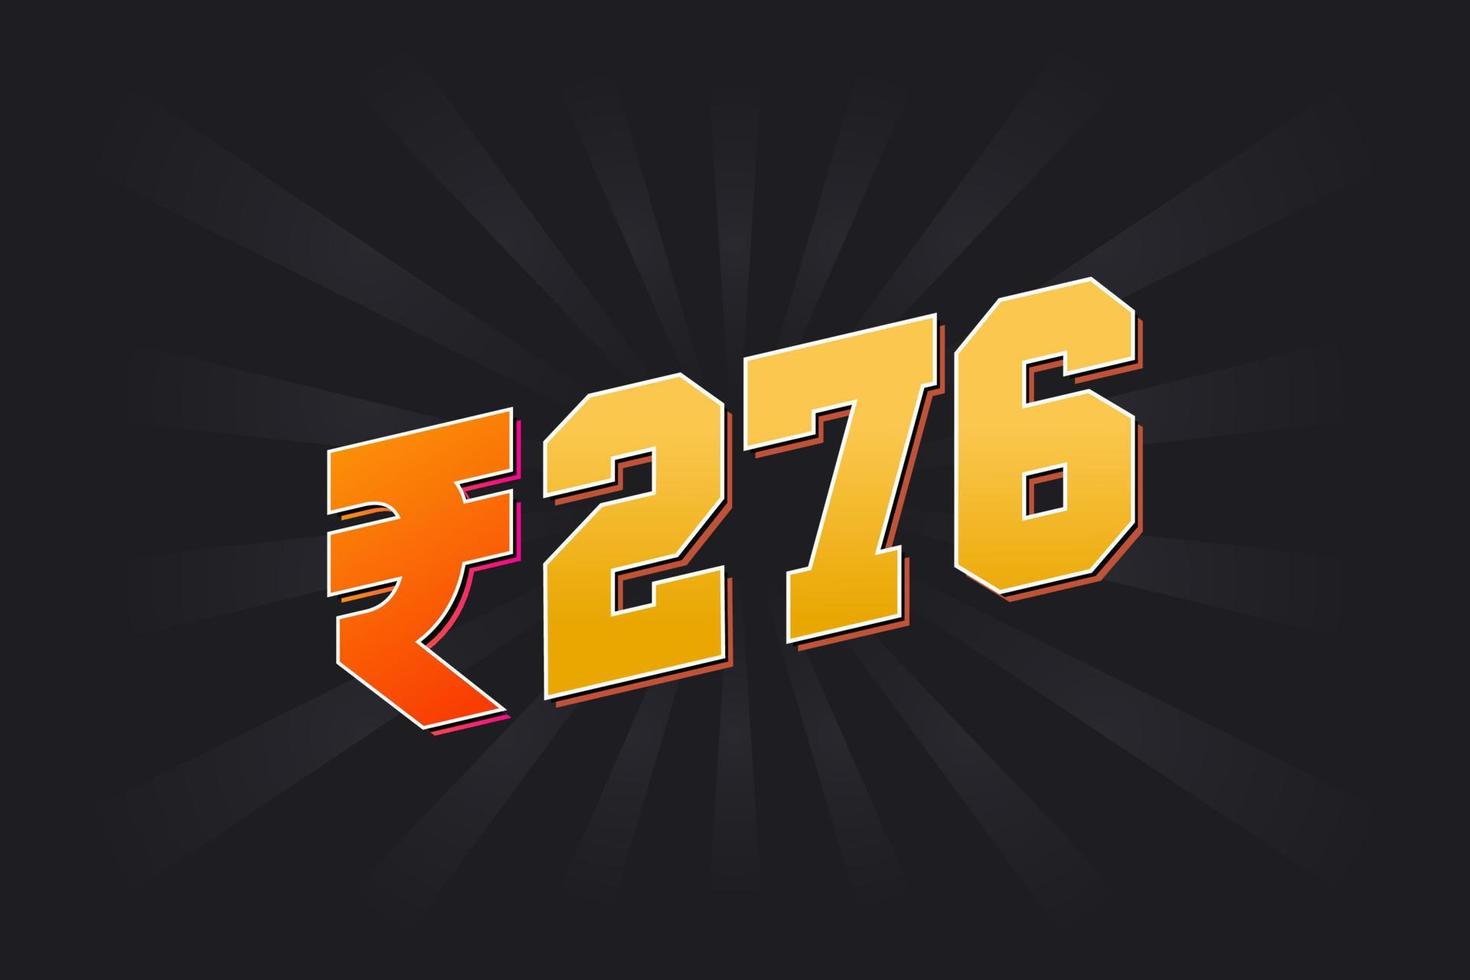 Image vectorielle de 276 roupies indiennes. 276 roupie symbole texte en gras illustration vectorielle vecteur